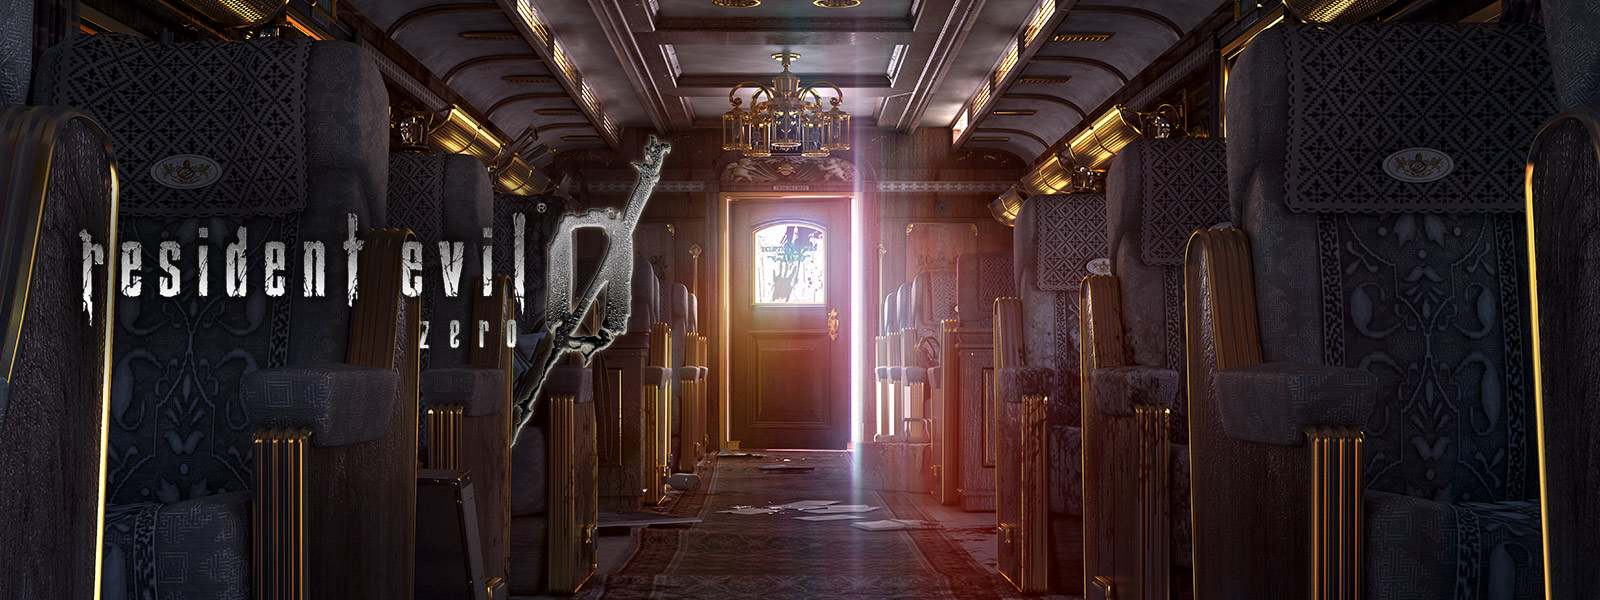 Resident Evil 0, image de l’écran de l’intérieur d’un train de luxe